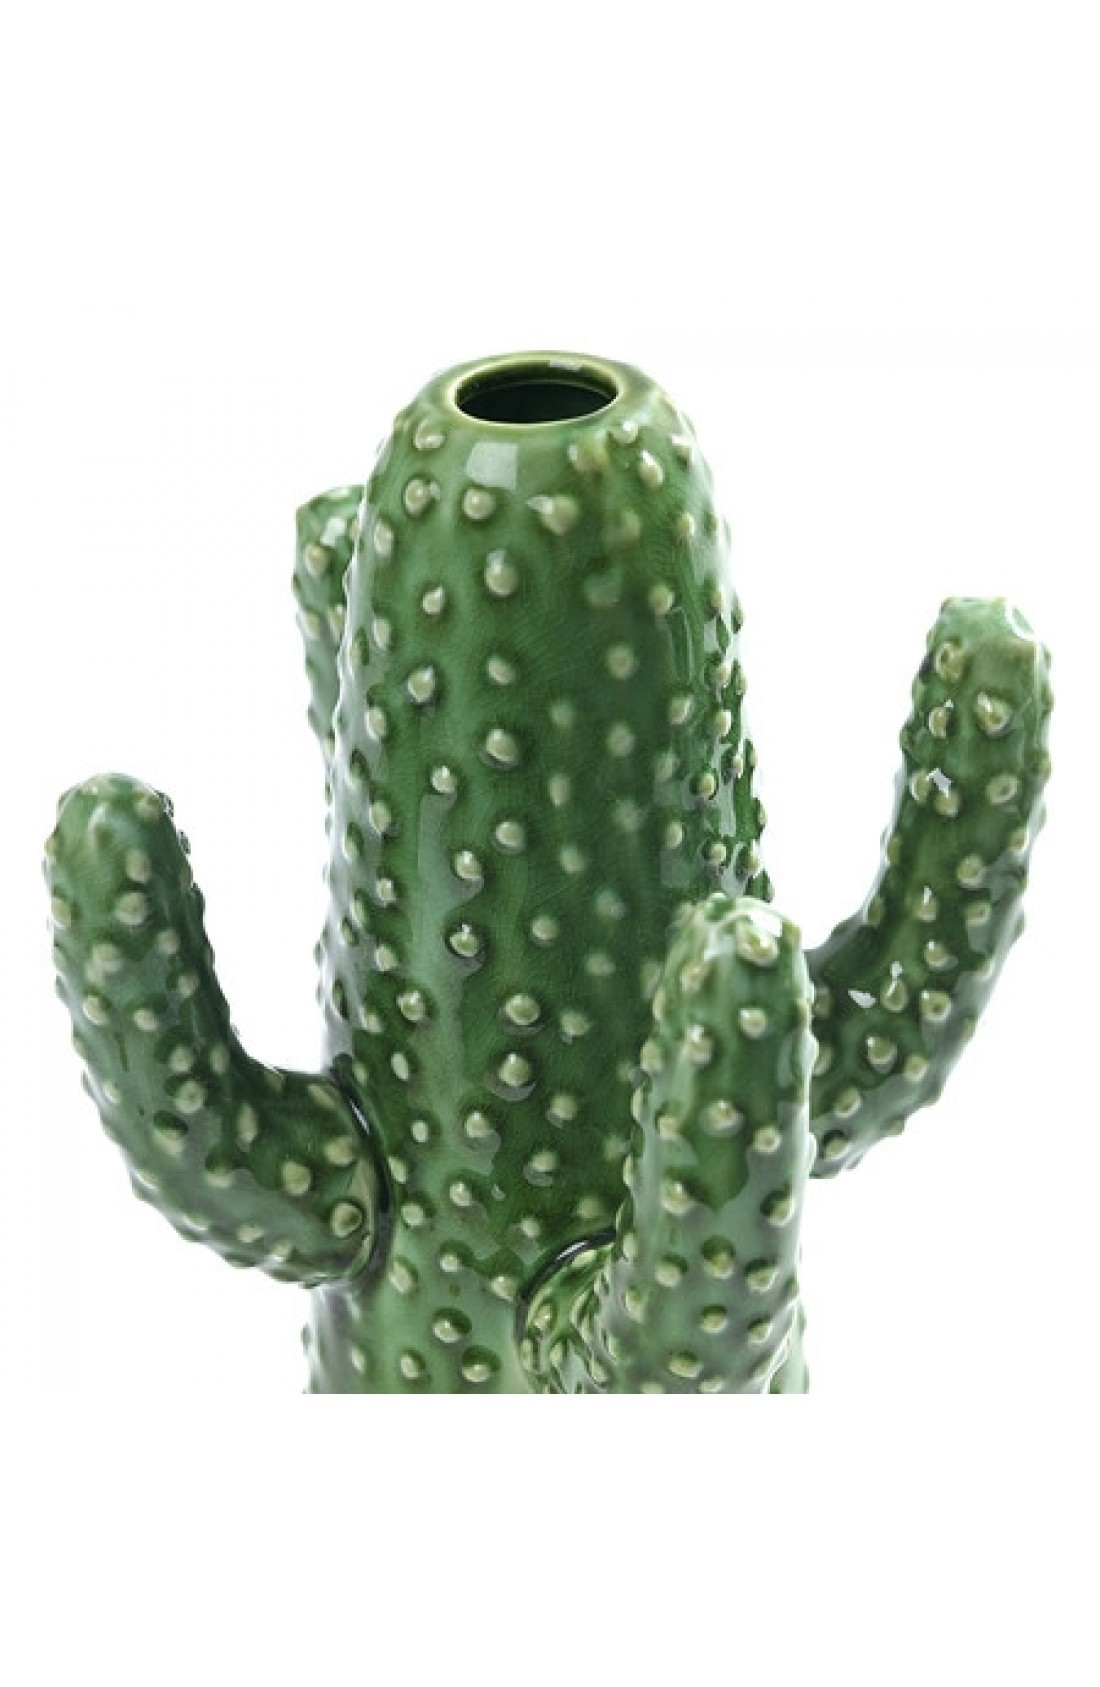 10 Elegant Serax Cactus Vase 2024 free download serax cactus vase of vaso cactus in ceramica monofiore elemento decorativo serax neofilia inside prevnext